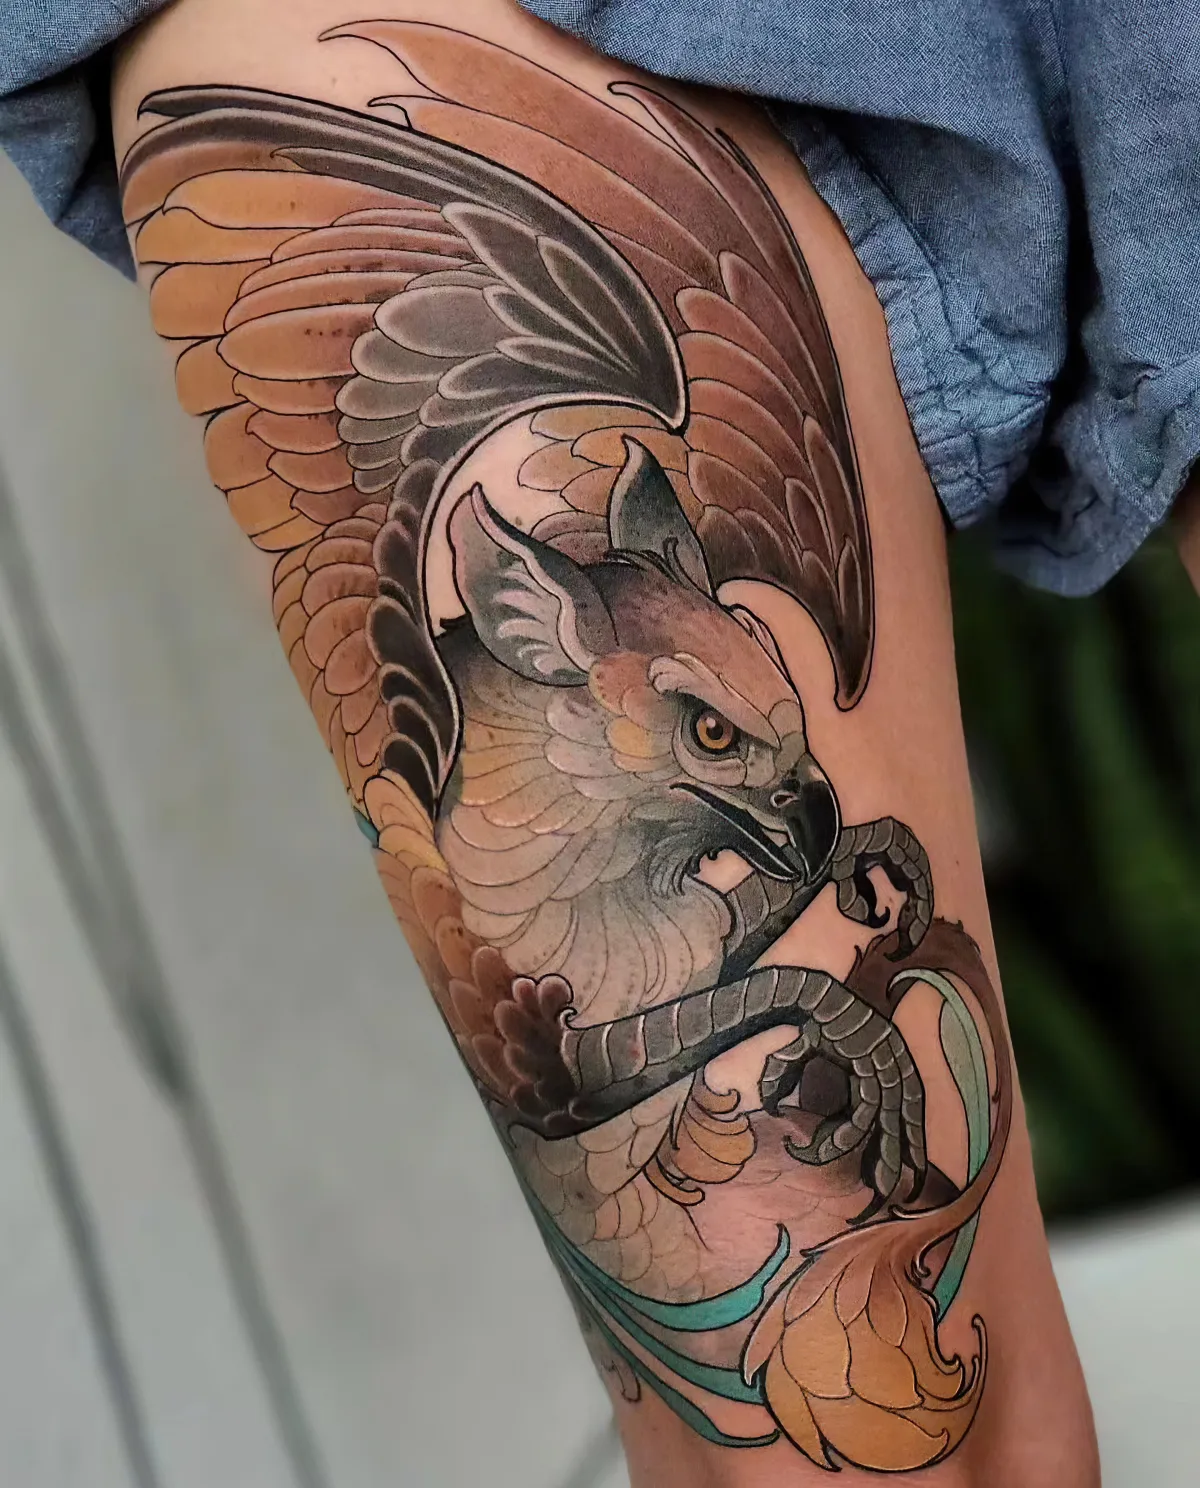 adler tattoo am oberschenkel farbige tätowierung vogel motiv